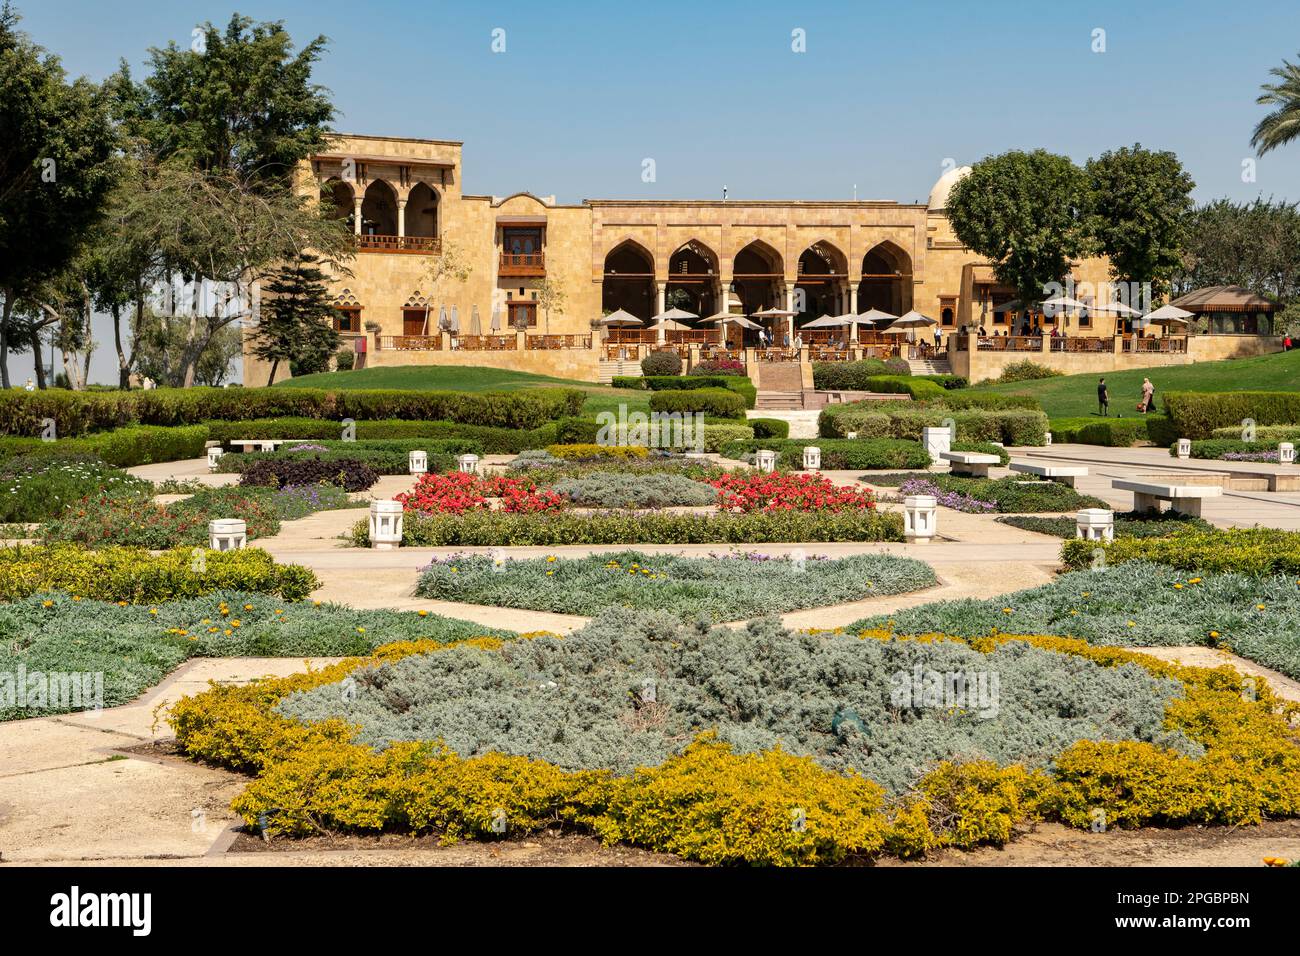 Jardins dans le parc Al Azhar, le Caire, Egypte Banque D'Images